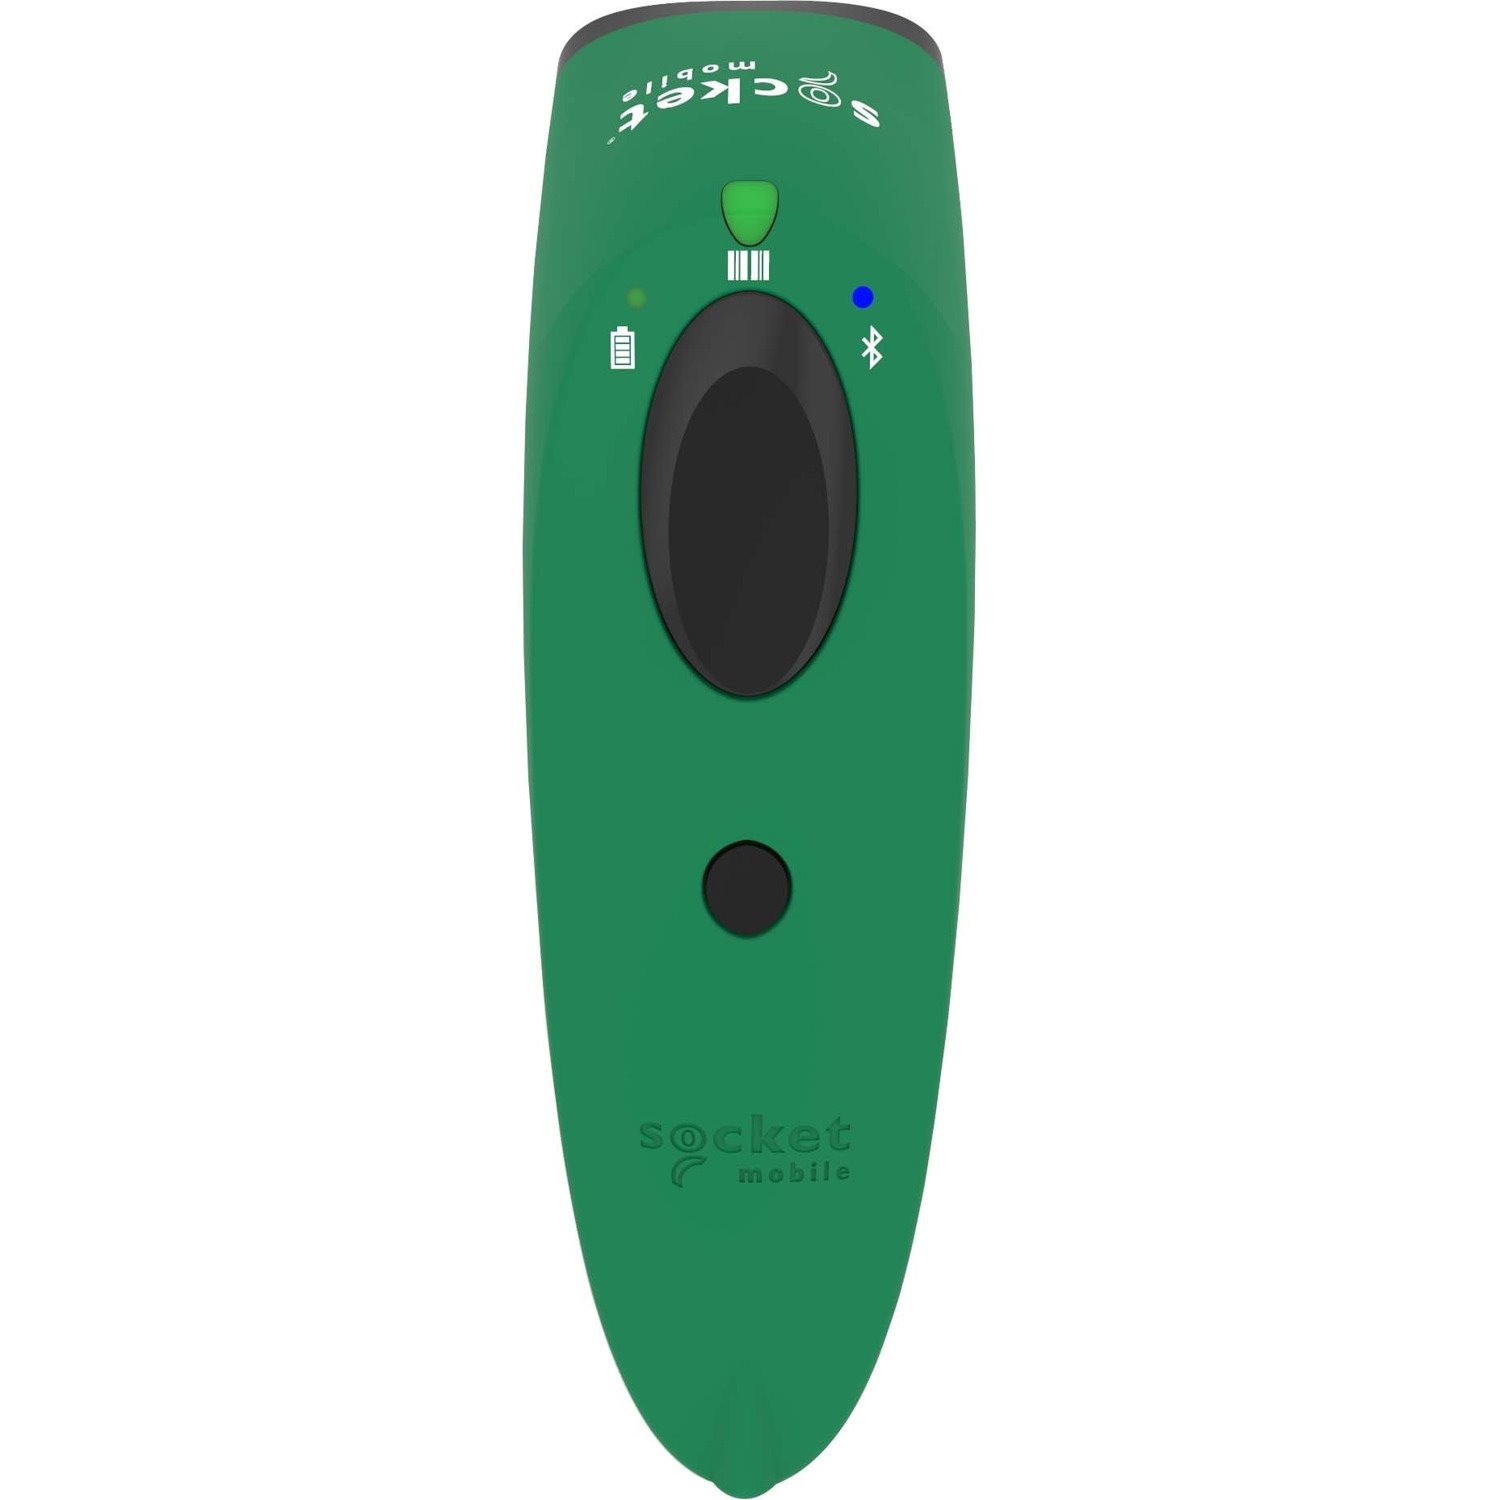 SocketScan&reg; S730, 1D Laser Barcode Scanner, Green